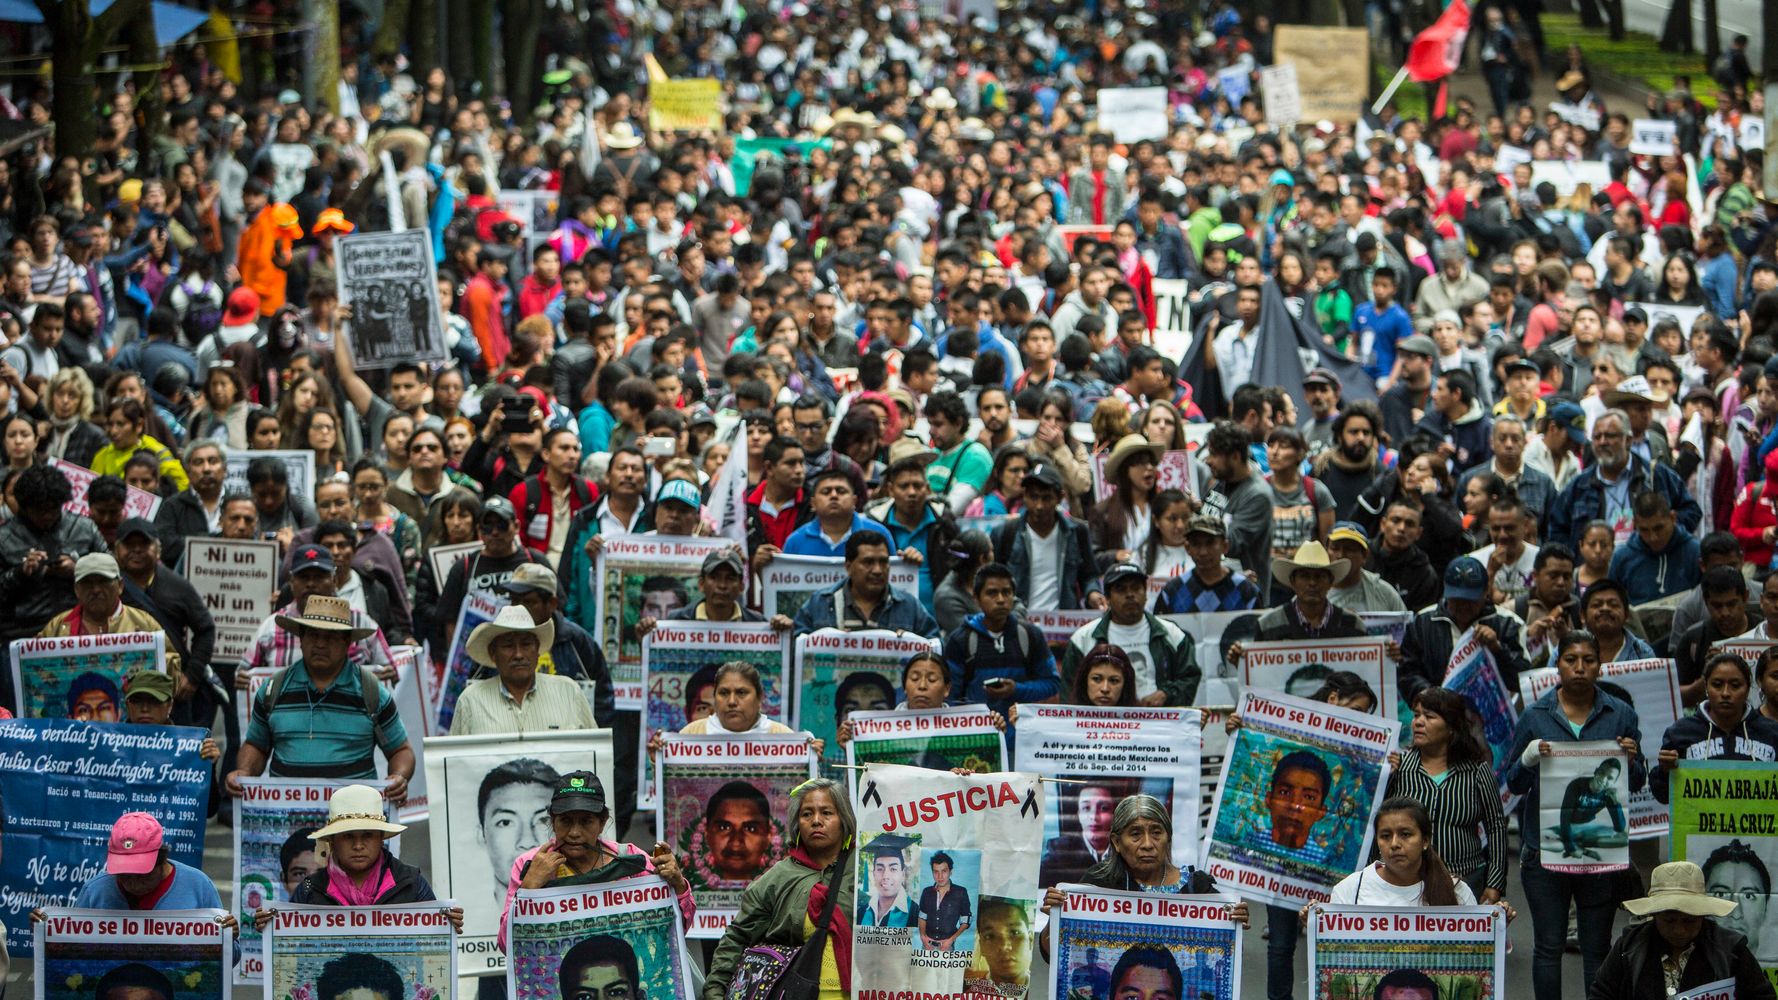 Исчезновение студентов в мексике. 43 Пропавших мексиканских студента. Мексика студенты пропали. 43 Студента пропали в Мексике. Исчезновение 43 студентов в Мексике.